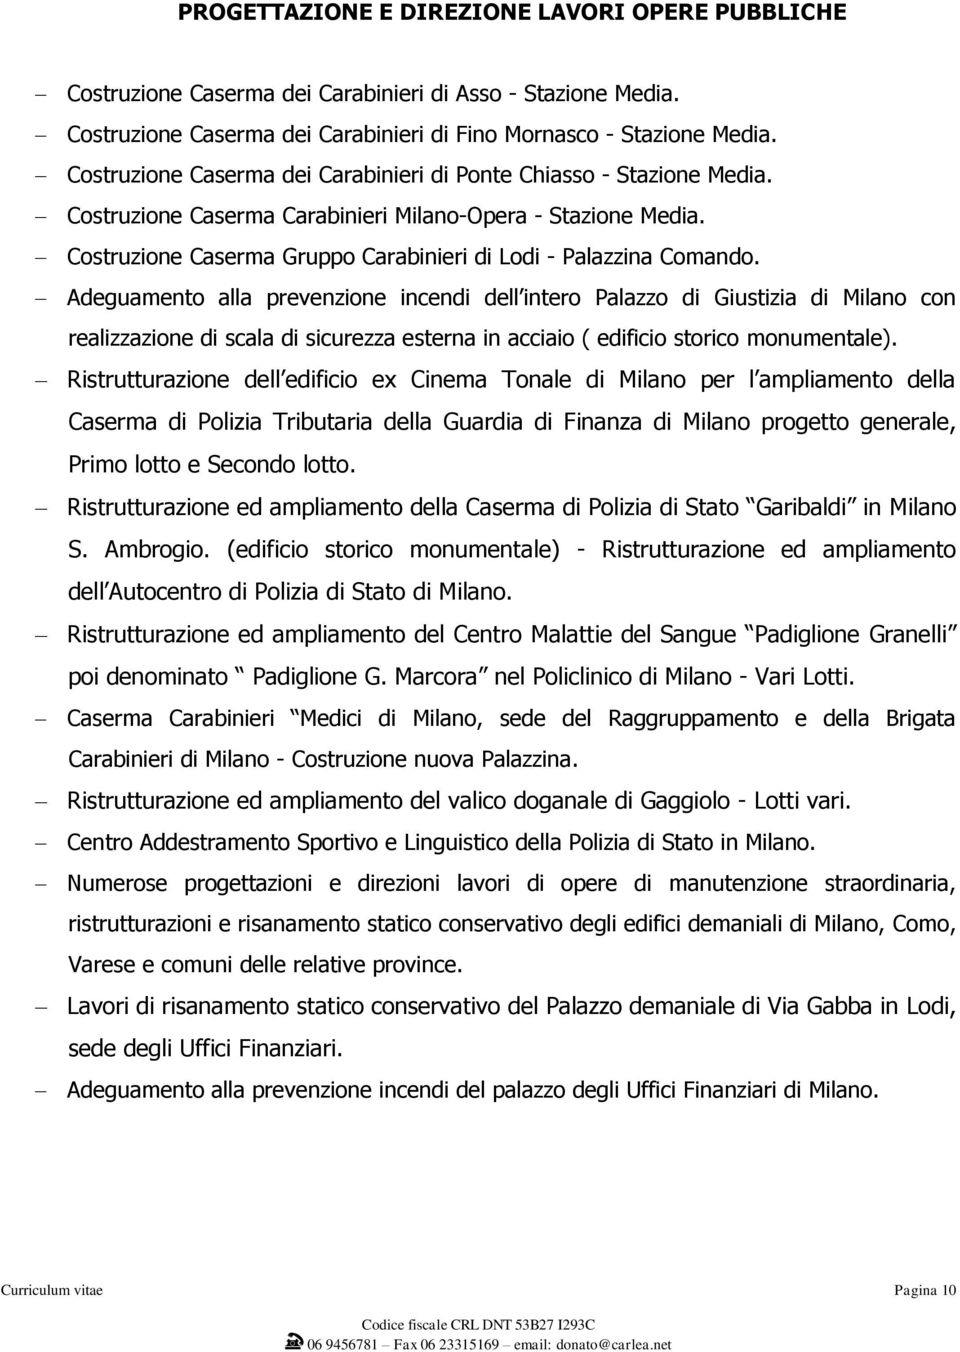 Costruzione Caserma Gruppo Carabinieri di Lodi - Palazzina Comando.